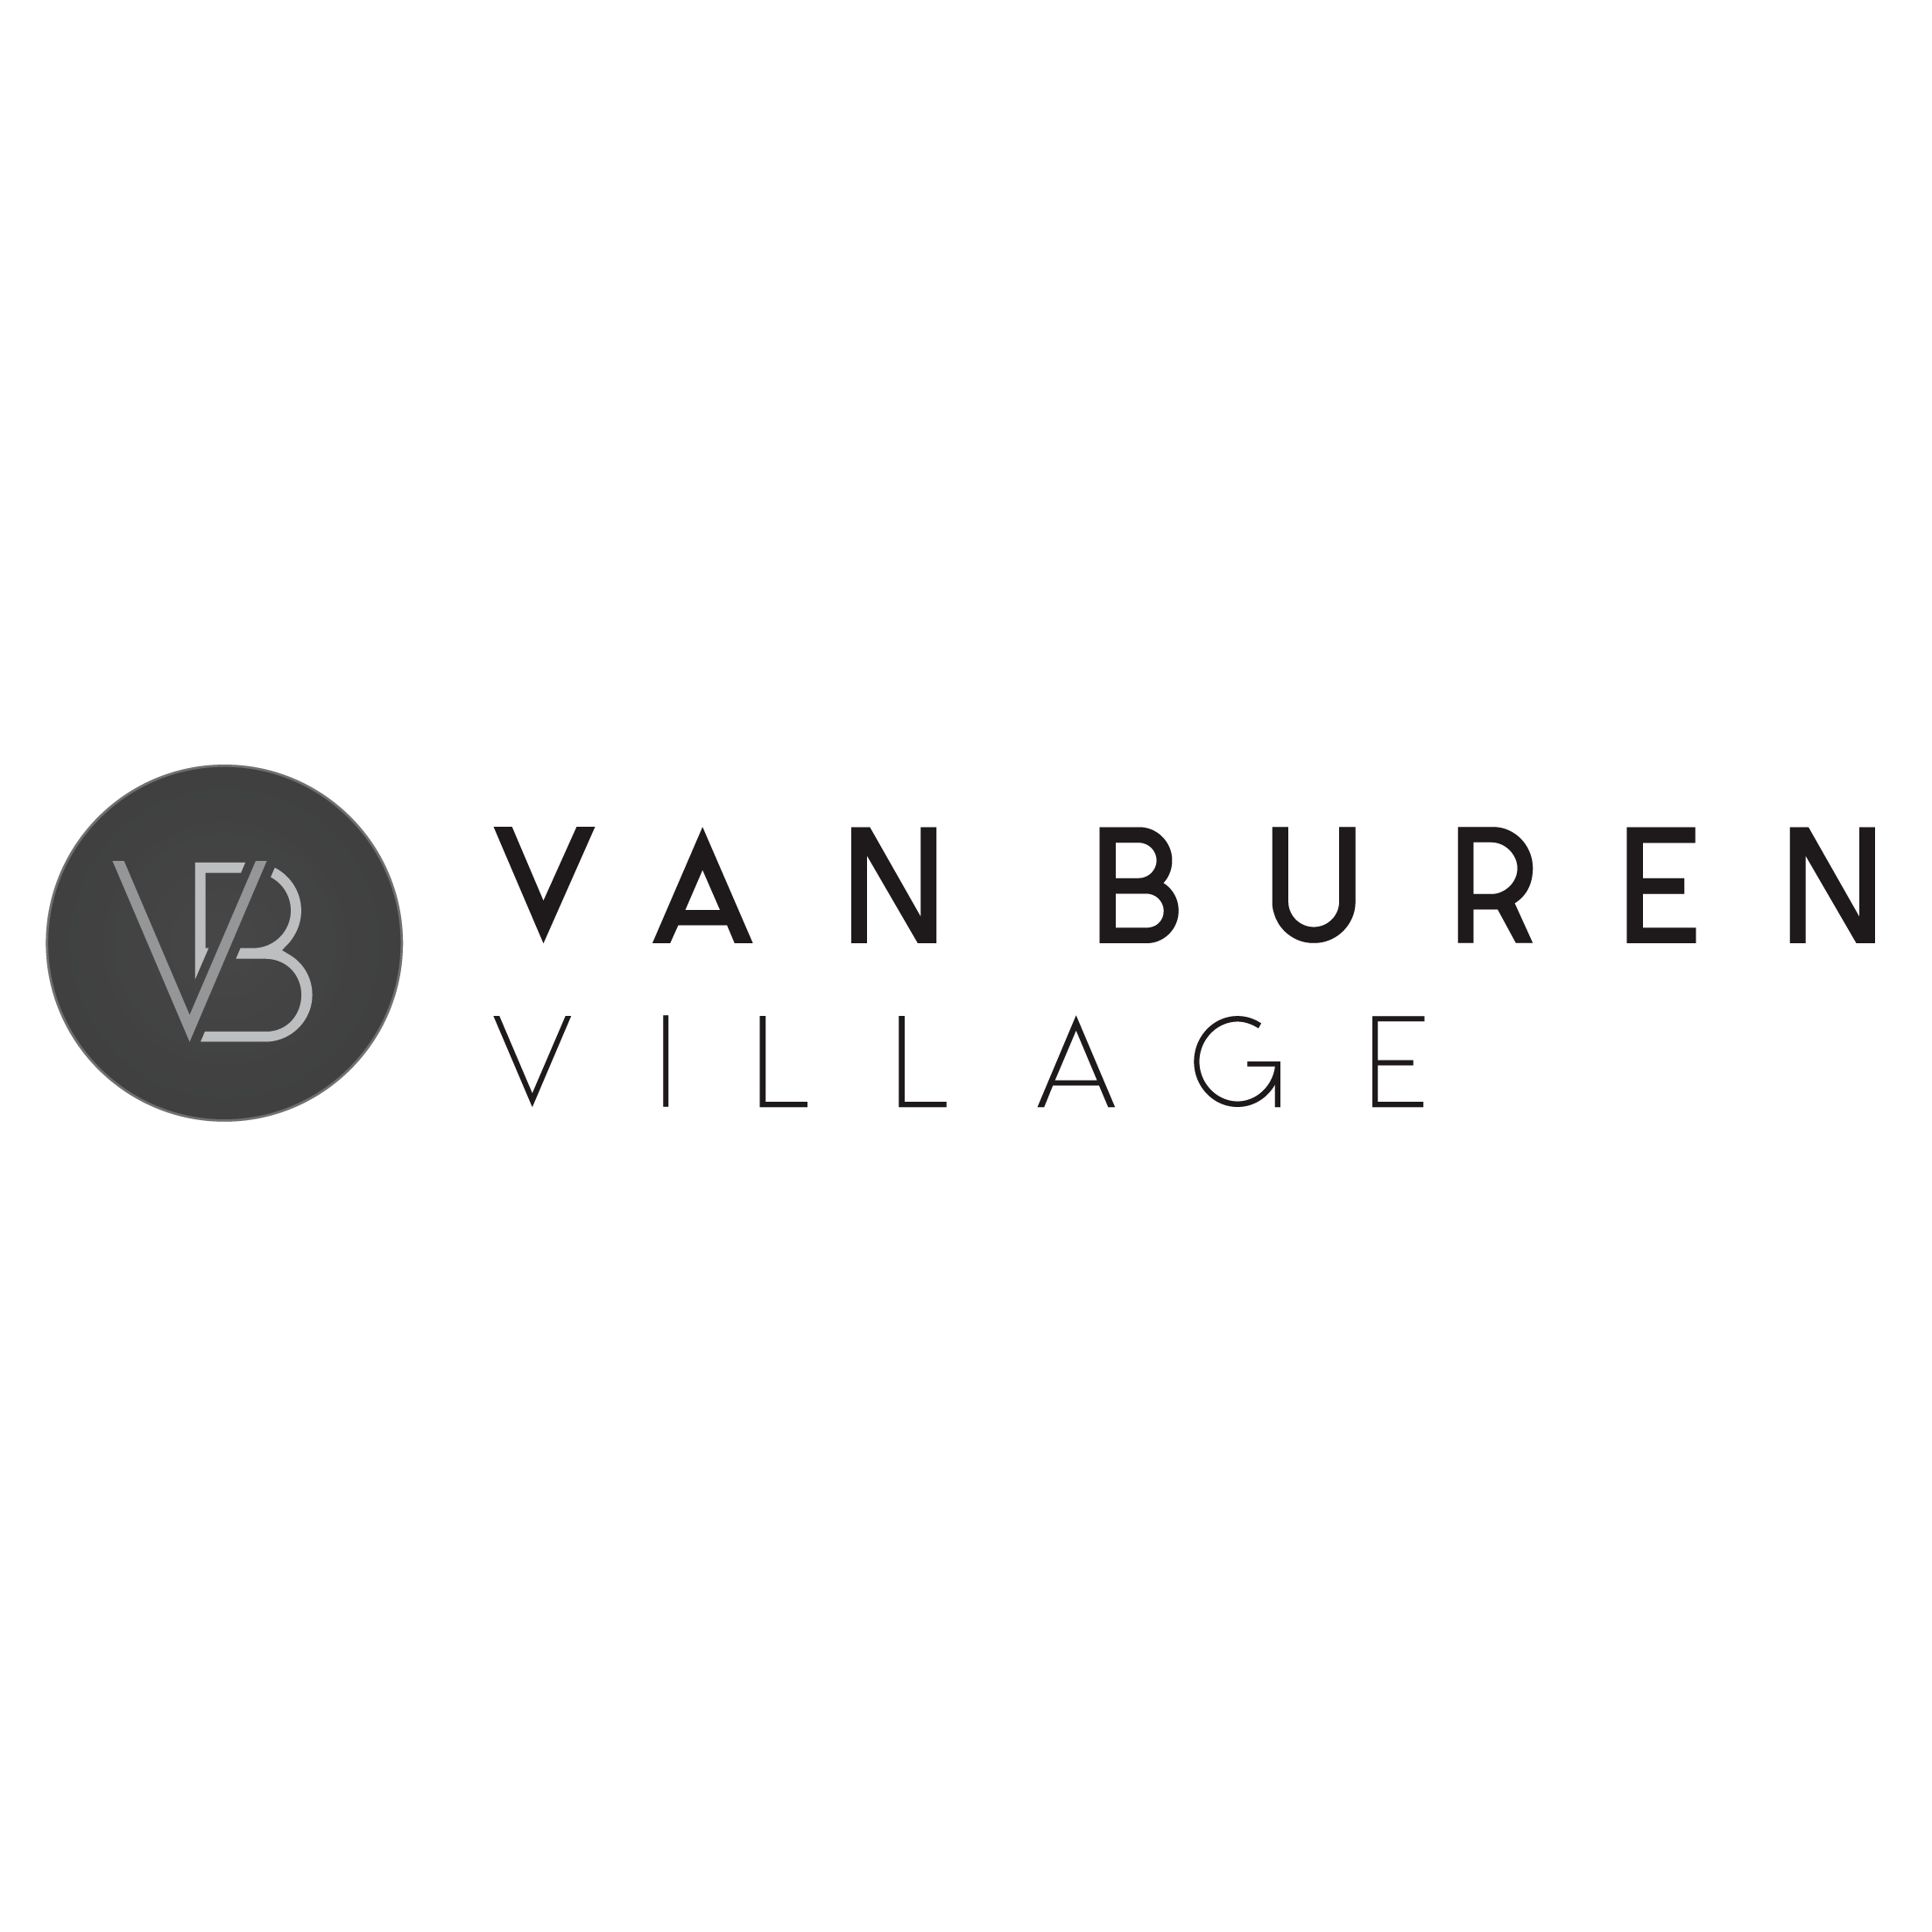 Van Buren Village